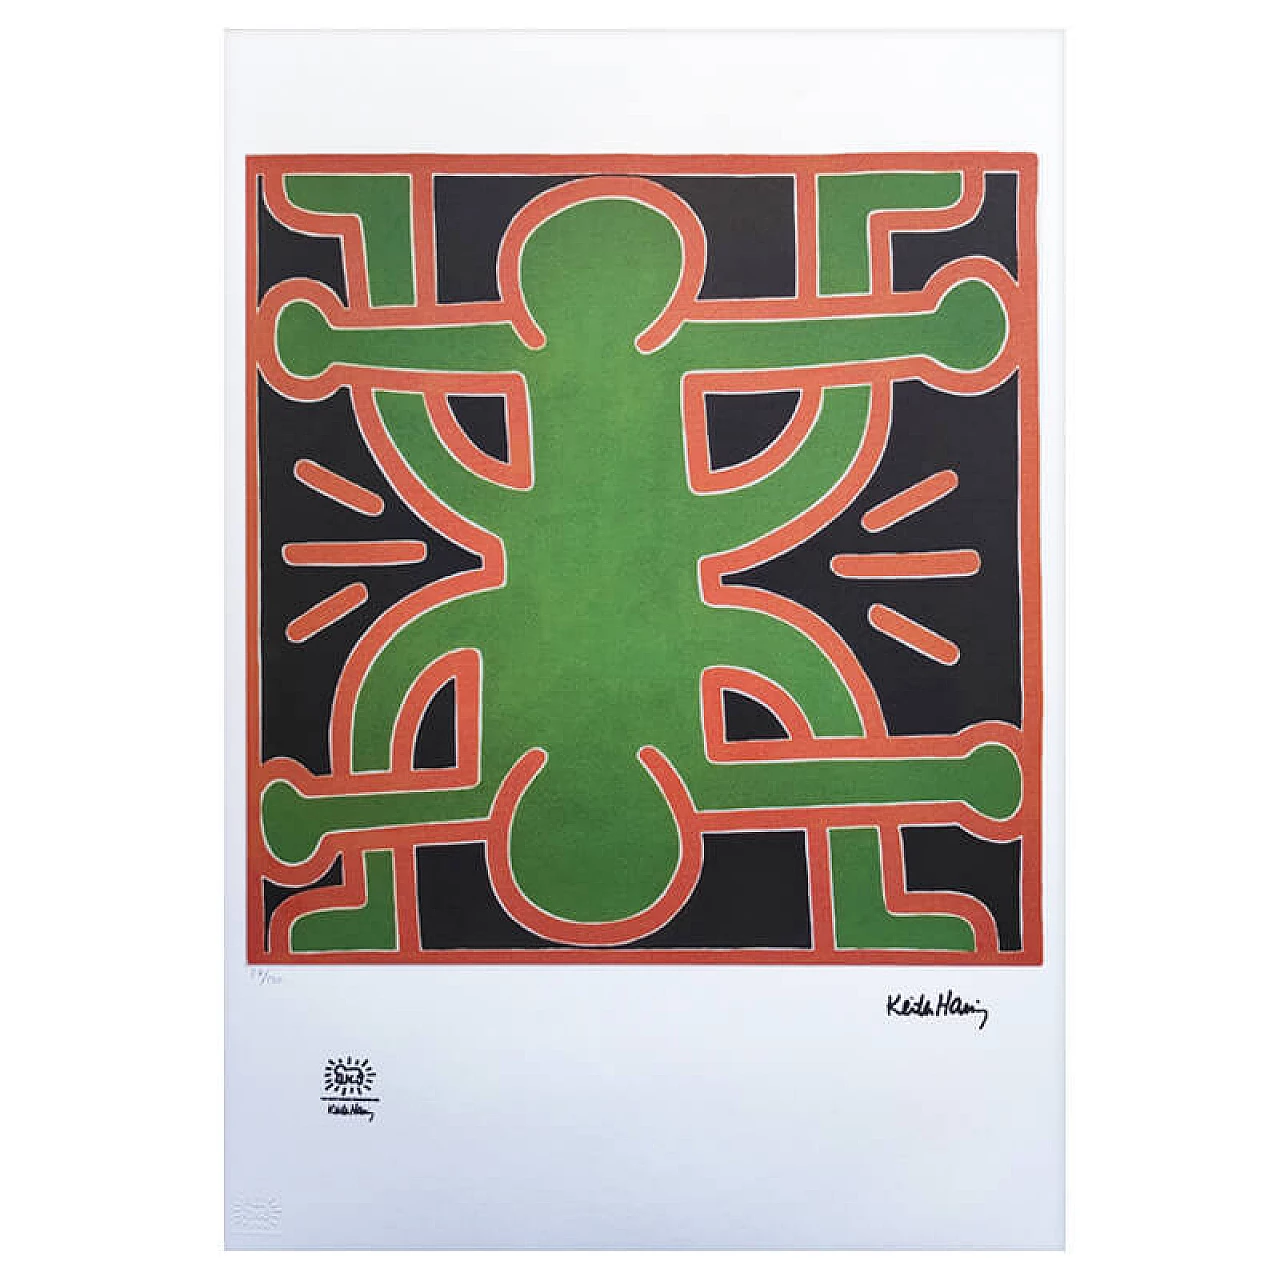 Originale litografia di Keith Haring in edizione limitata, 1990 1